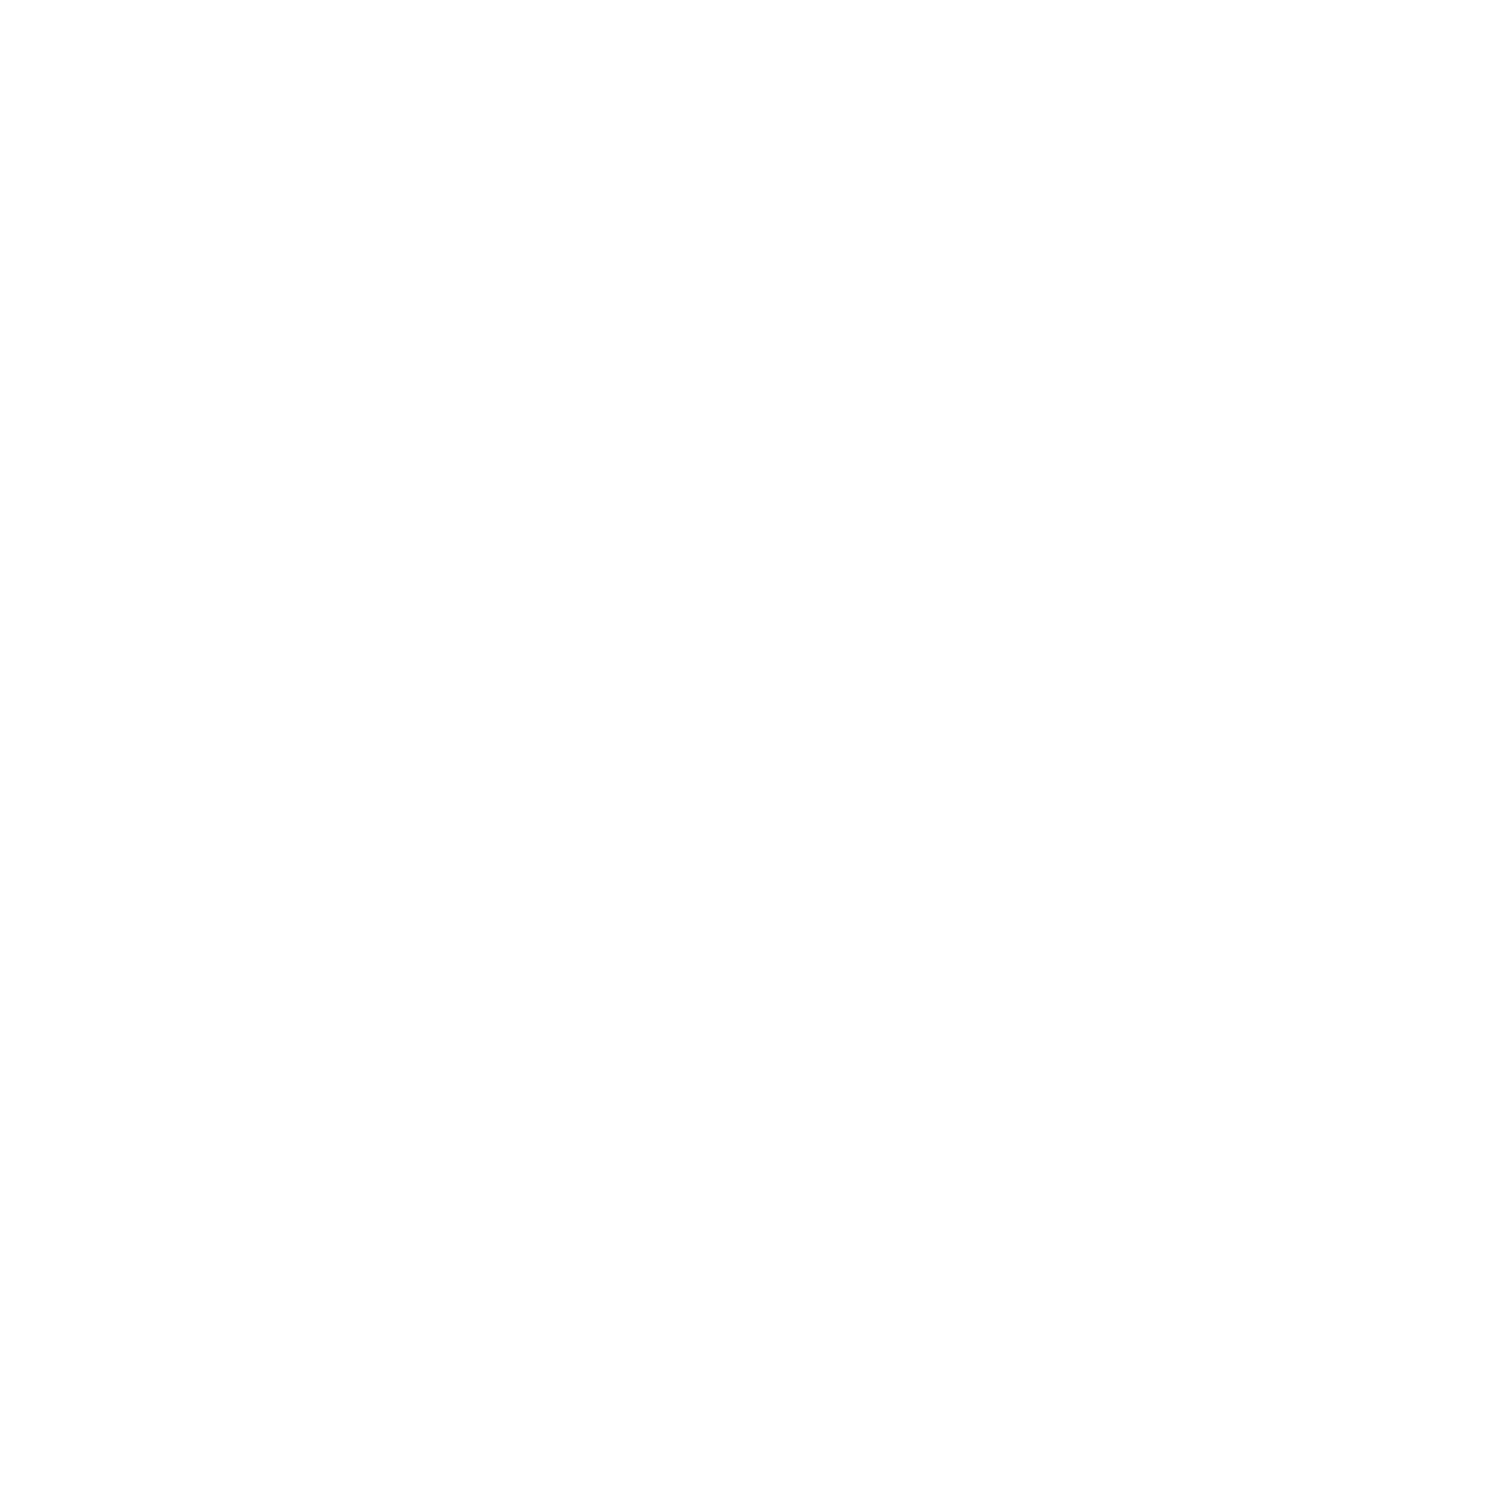 Silver Mountain Interiors